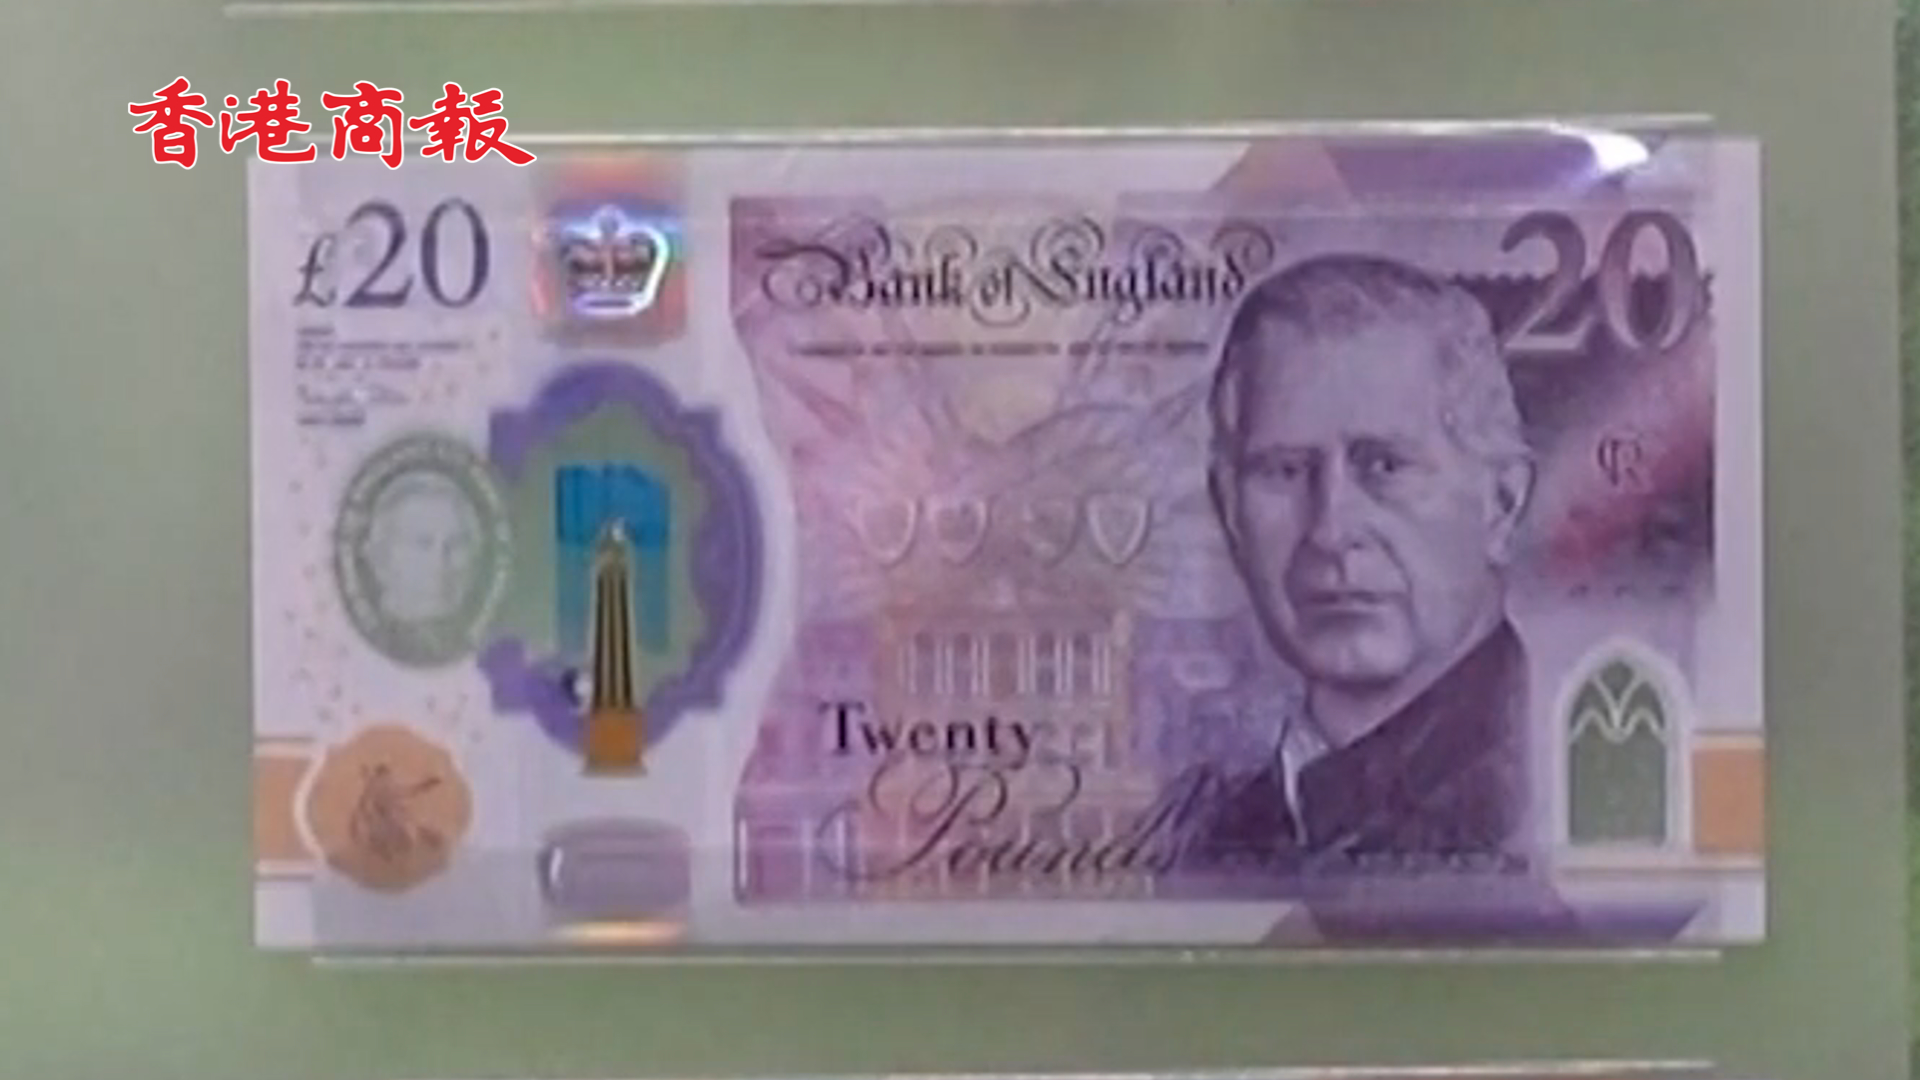 有片丨英國展出印有查理斯三世肖像的英鎊紙幣 6月5日起流通